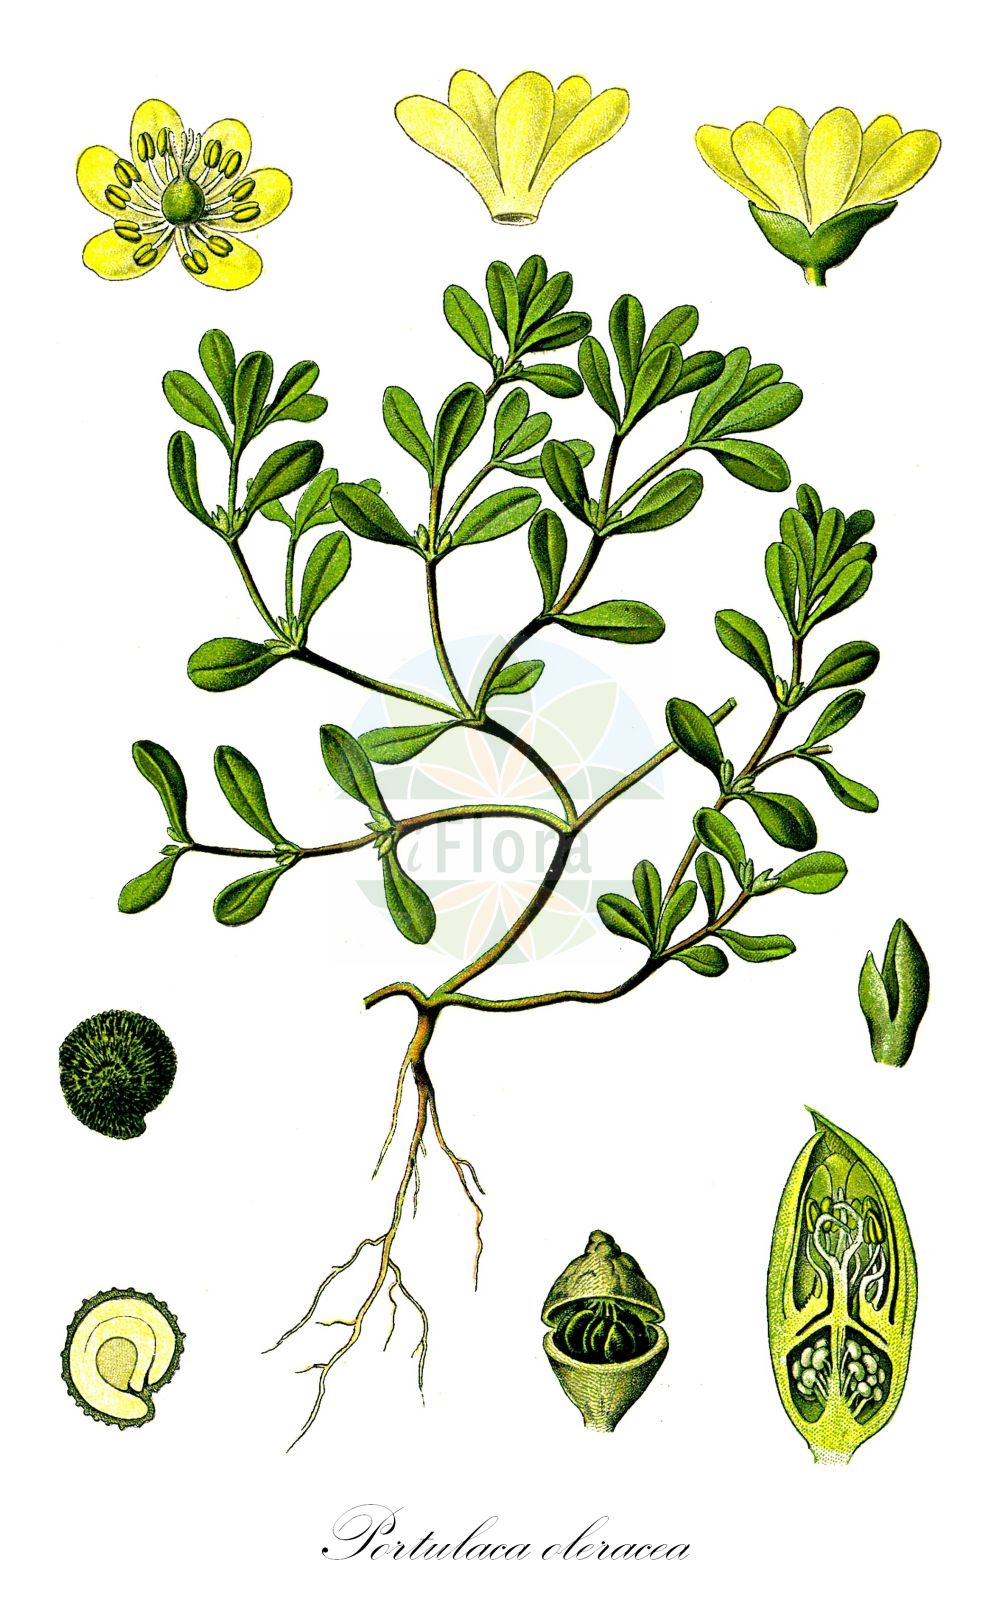 Historische Abbildung von Portulaca oleracea (Gemüse-Portulak - Common Purslane). Das Bild zeigt Blatt, Bluete, Frucht und Same. ---- Historical Drawing of Portulaca oleracea (Gemüse-Portulak - Common Purslane). The image is showing leaf, flower, fruit and seed.(Portulaca oleracea,Gemüse-Portulak,Common Purslane,Portulaca officinarum,Portulaca oleracea,Portulaca stellata,Gemuese-Portulak,Wilder Portulak,Common Purslane,Purslane,Little Hogweed,Fatweed,Portulaca,Portulak,Purslane,Portulacaceae,Portulakgewächse,Purslane family,Blatt,Bluete,Frucht,Same,leaf,flower,fruit,seed,Thomé (1885))